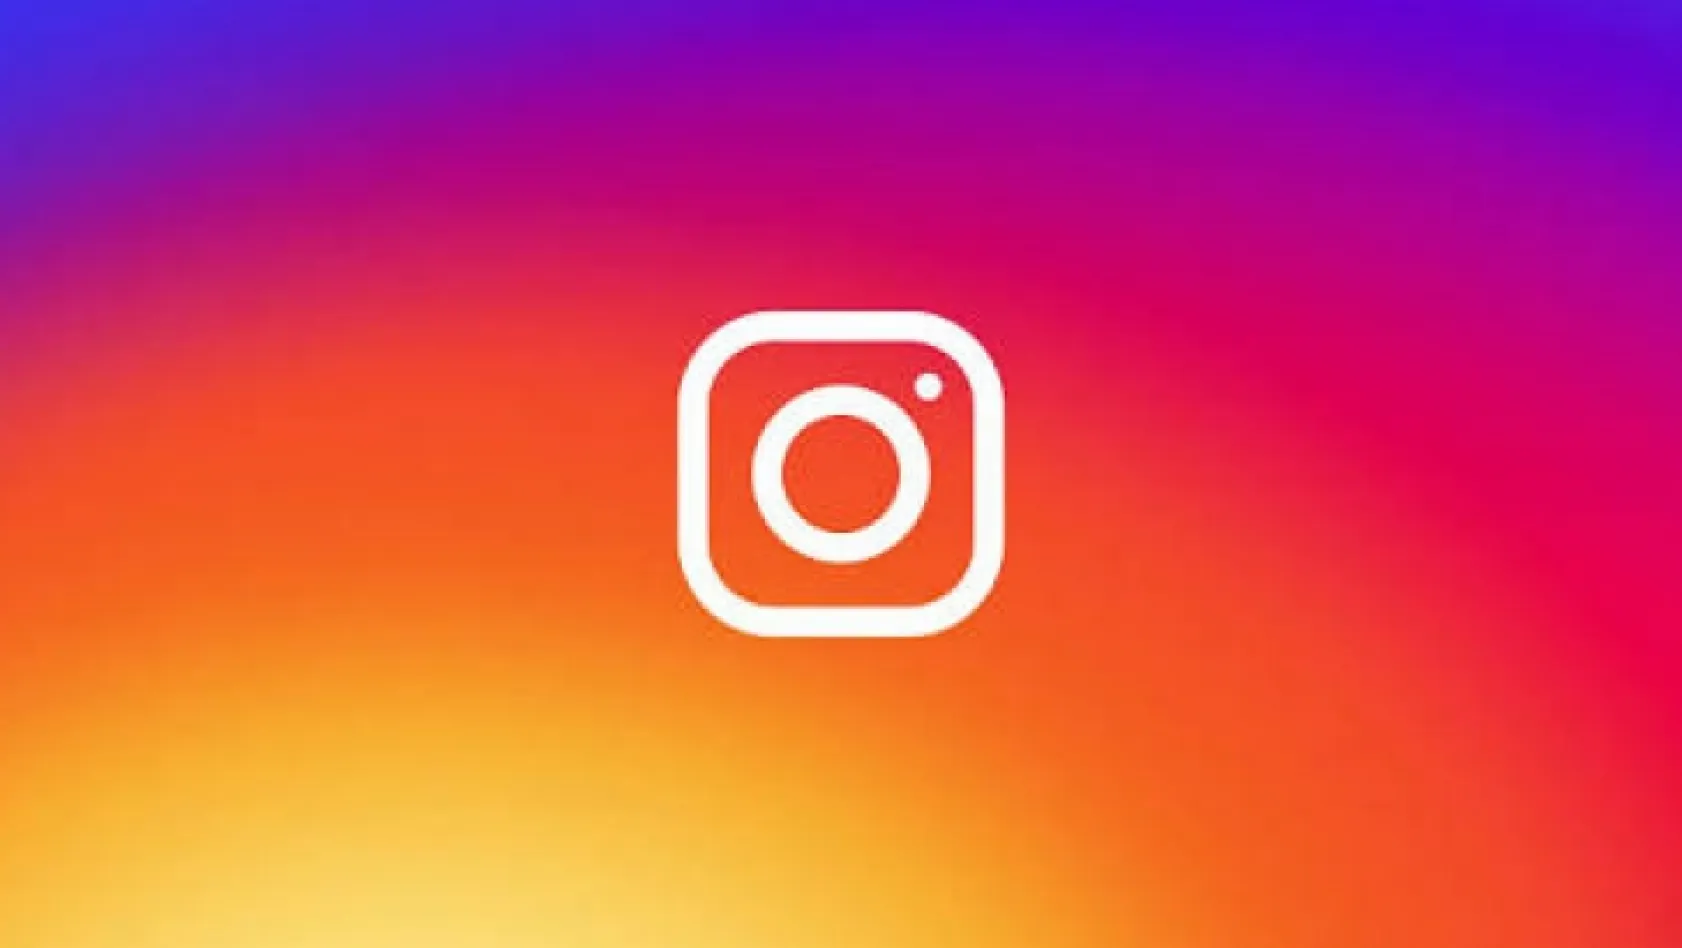 Instagram kullanıcılarını sevindirecek eklenti